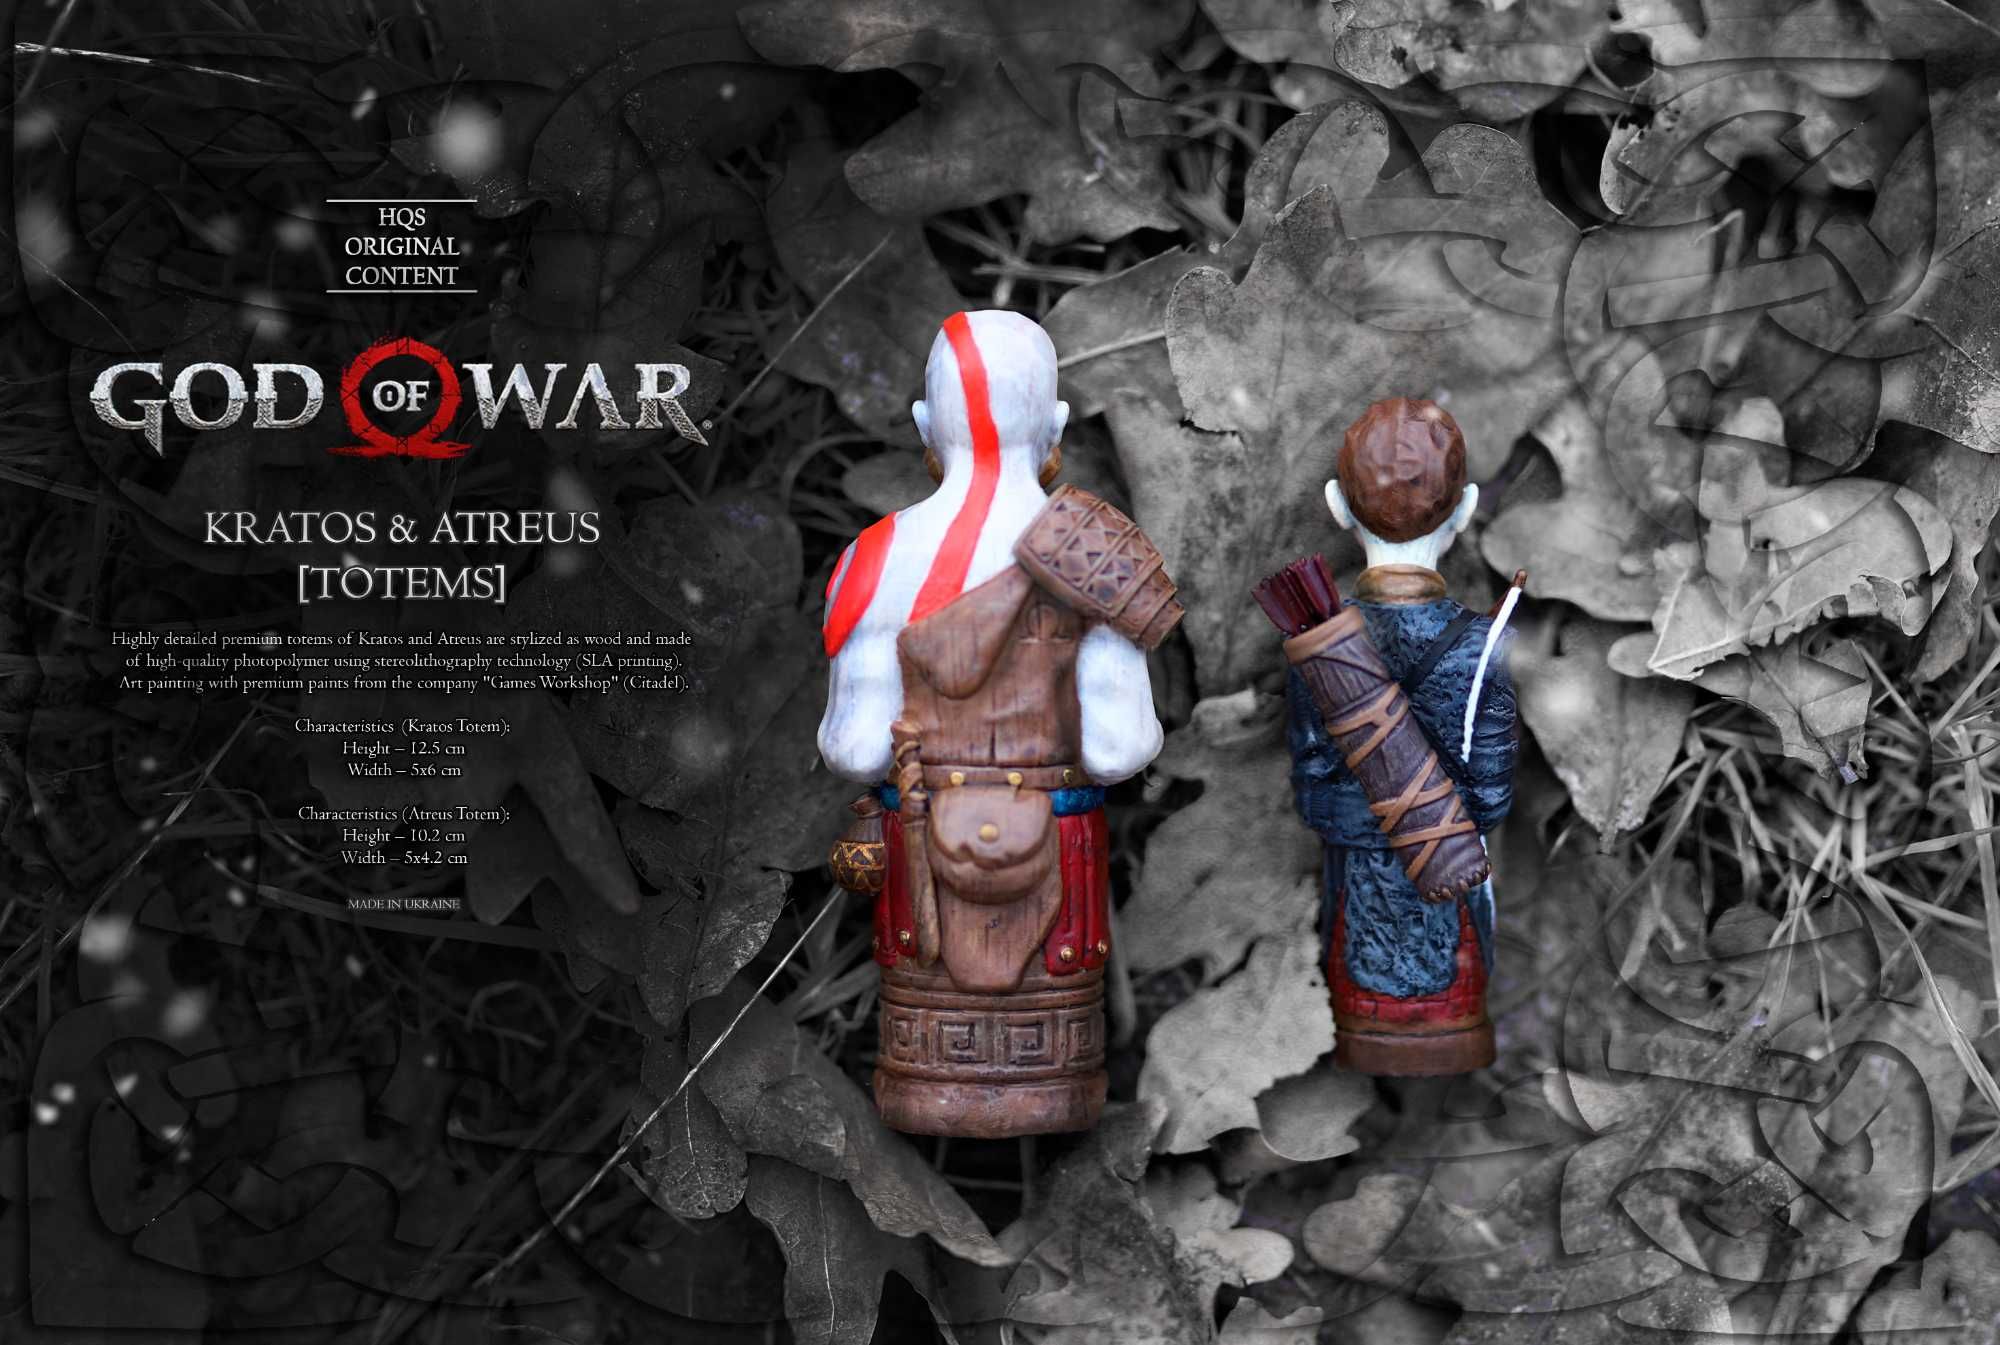 Тотемы из "God of War" Kratos & Atreus ("Бог Войны" Кратос и Атрей)